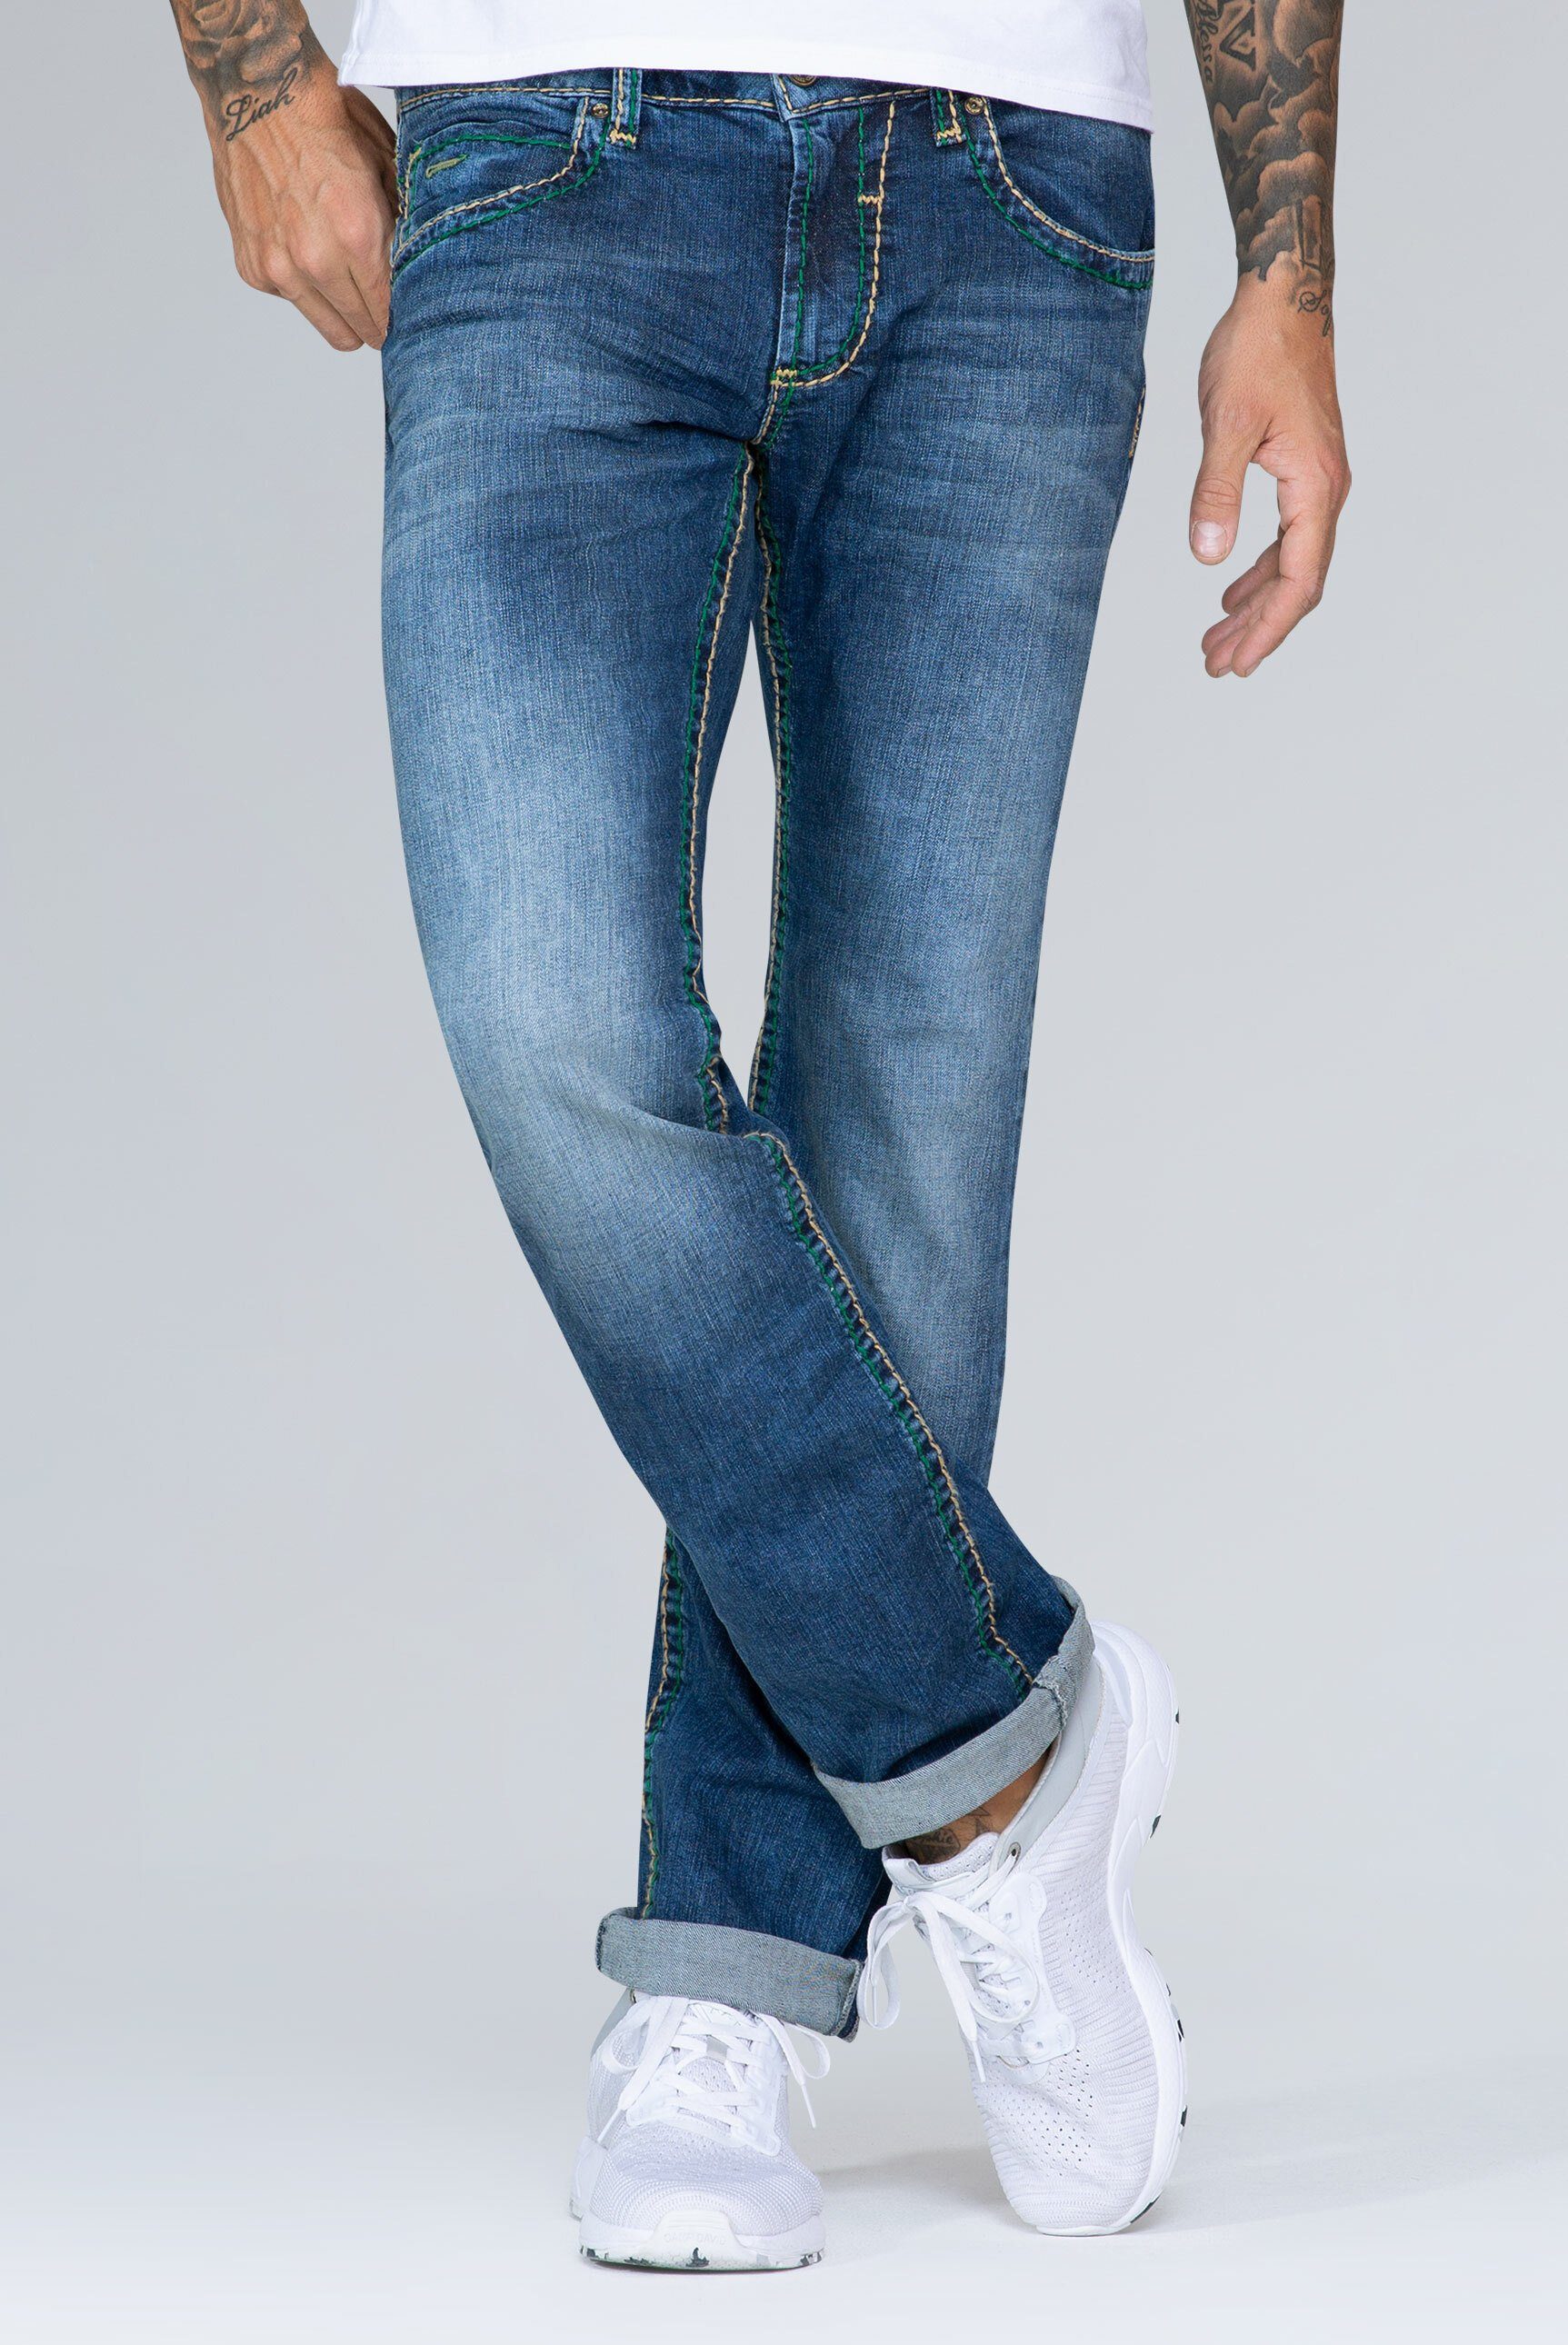 CAMP DAVID Straight-Jeans »NI:CO:R611« mit markanten Steppnähten online  kaufen | OTTO